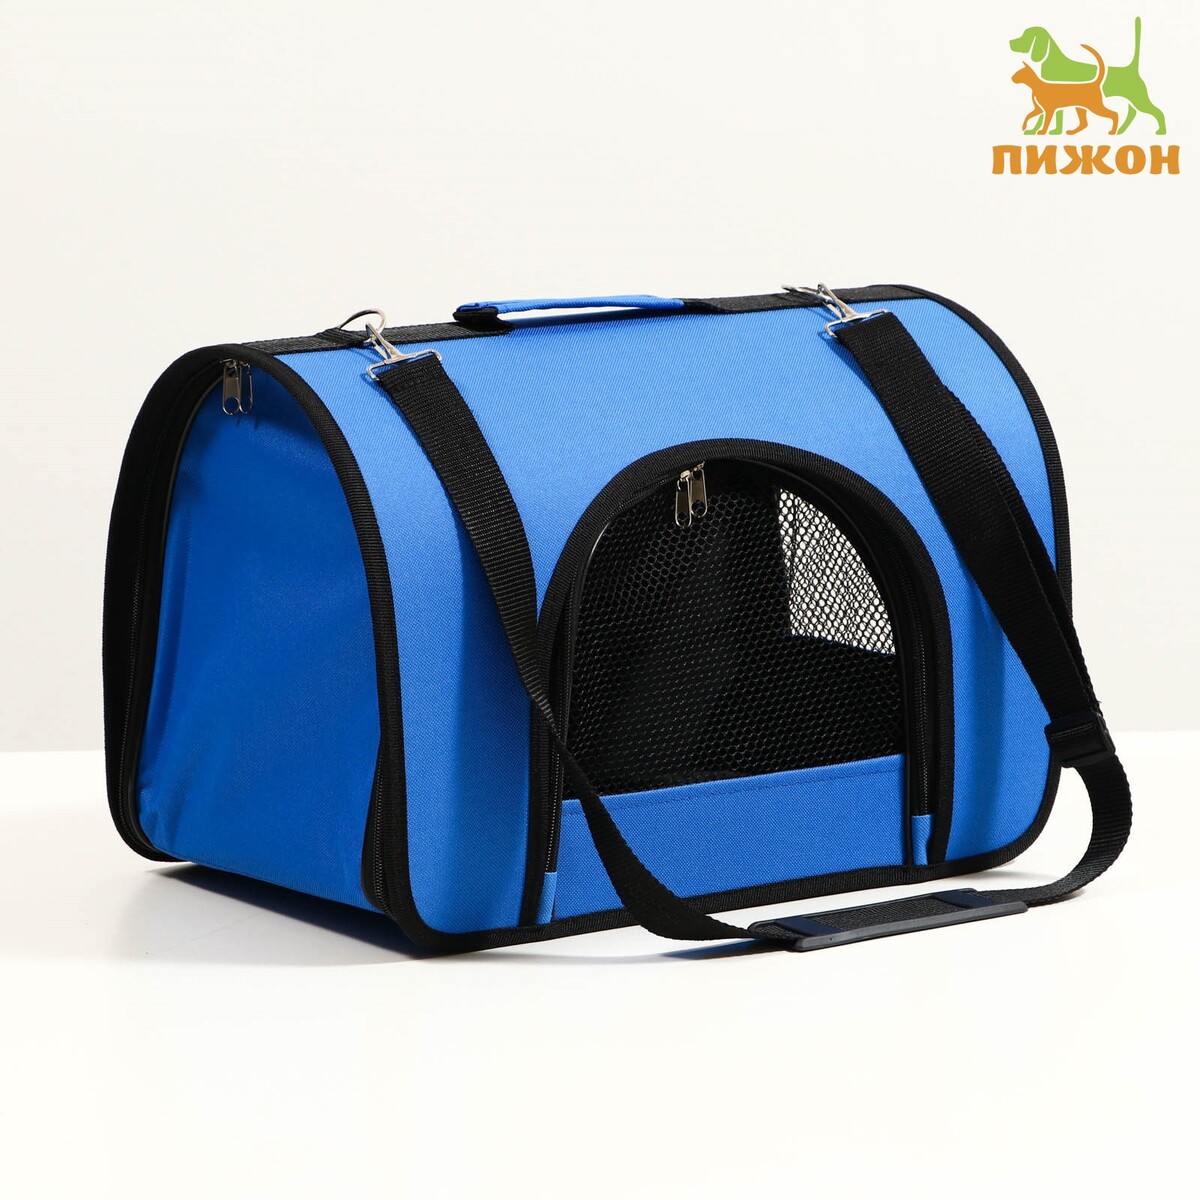 Сумка - переноска для животных, 2 входа, 40 х 25 х 28 см, синяя сумка переноска для животных каркасная 40 х 25 х 25 см синяя с котом